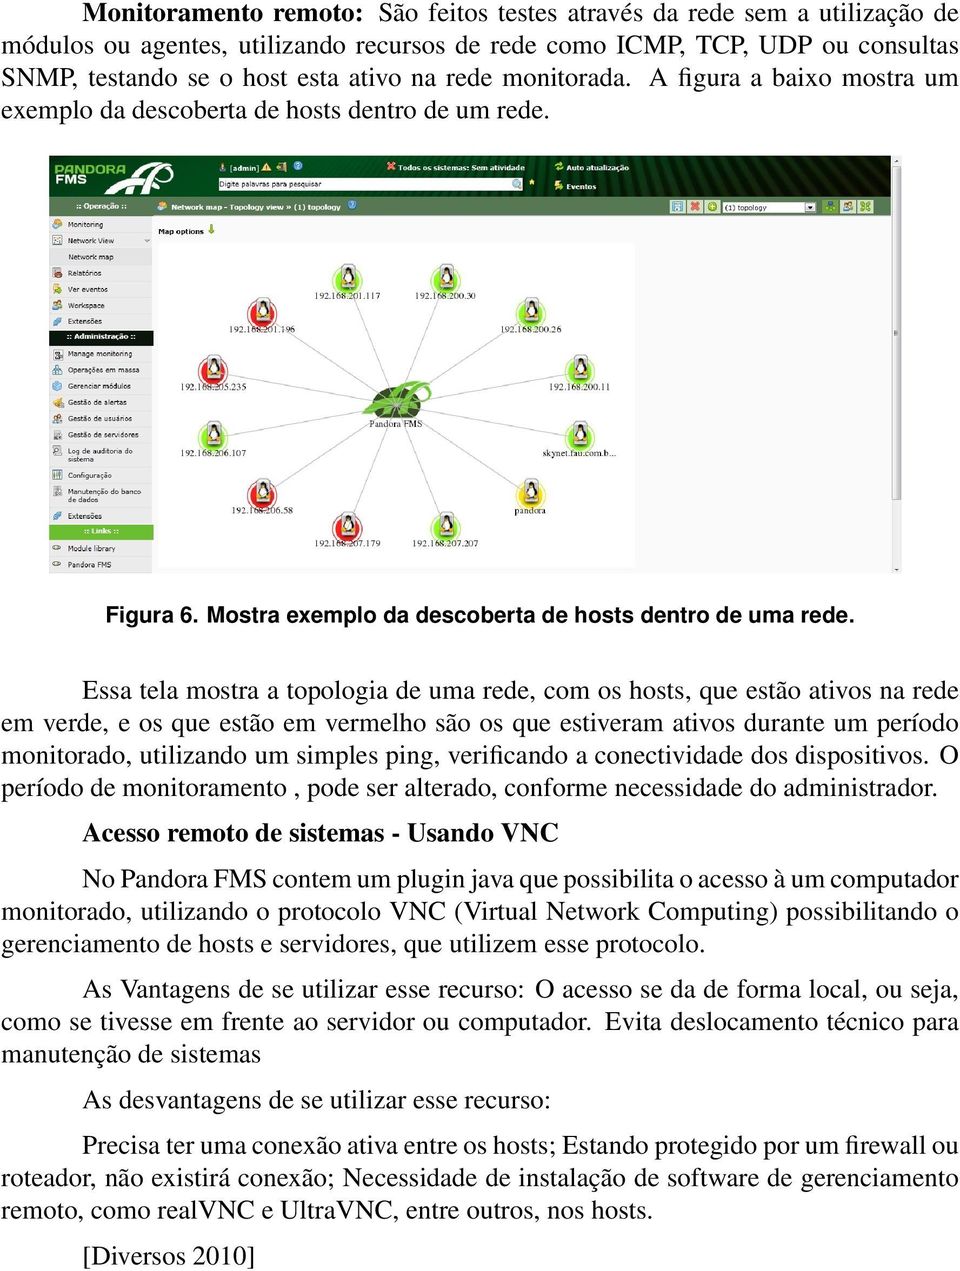 Essa tela mostra a topologia de uma rede, com os hosts, que estão ativos na rede em verde, e os que estão em vermelho são os que estiveram ativos durante um período monitorado, utilizando um simples